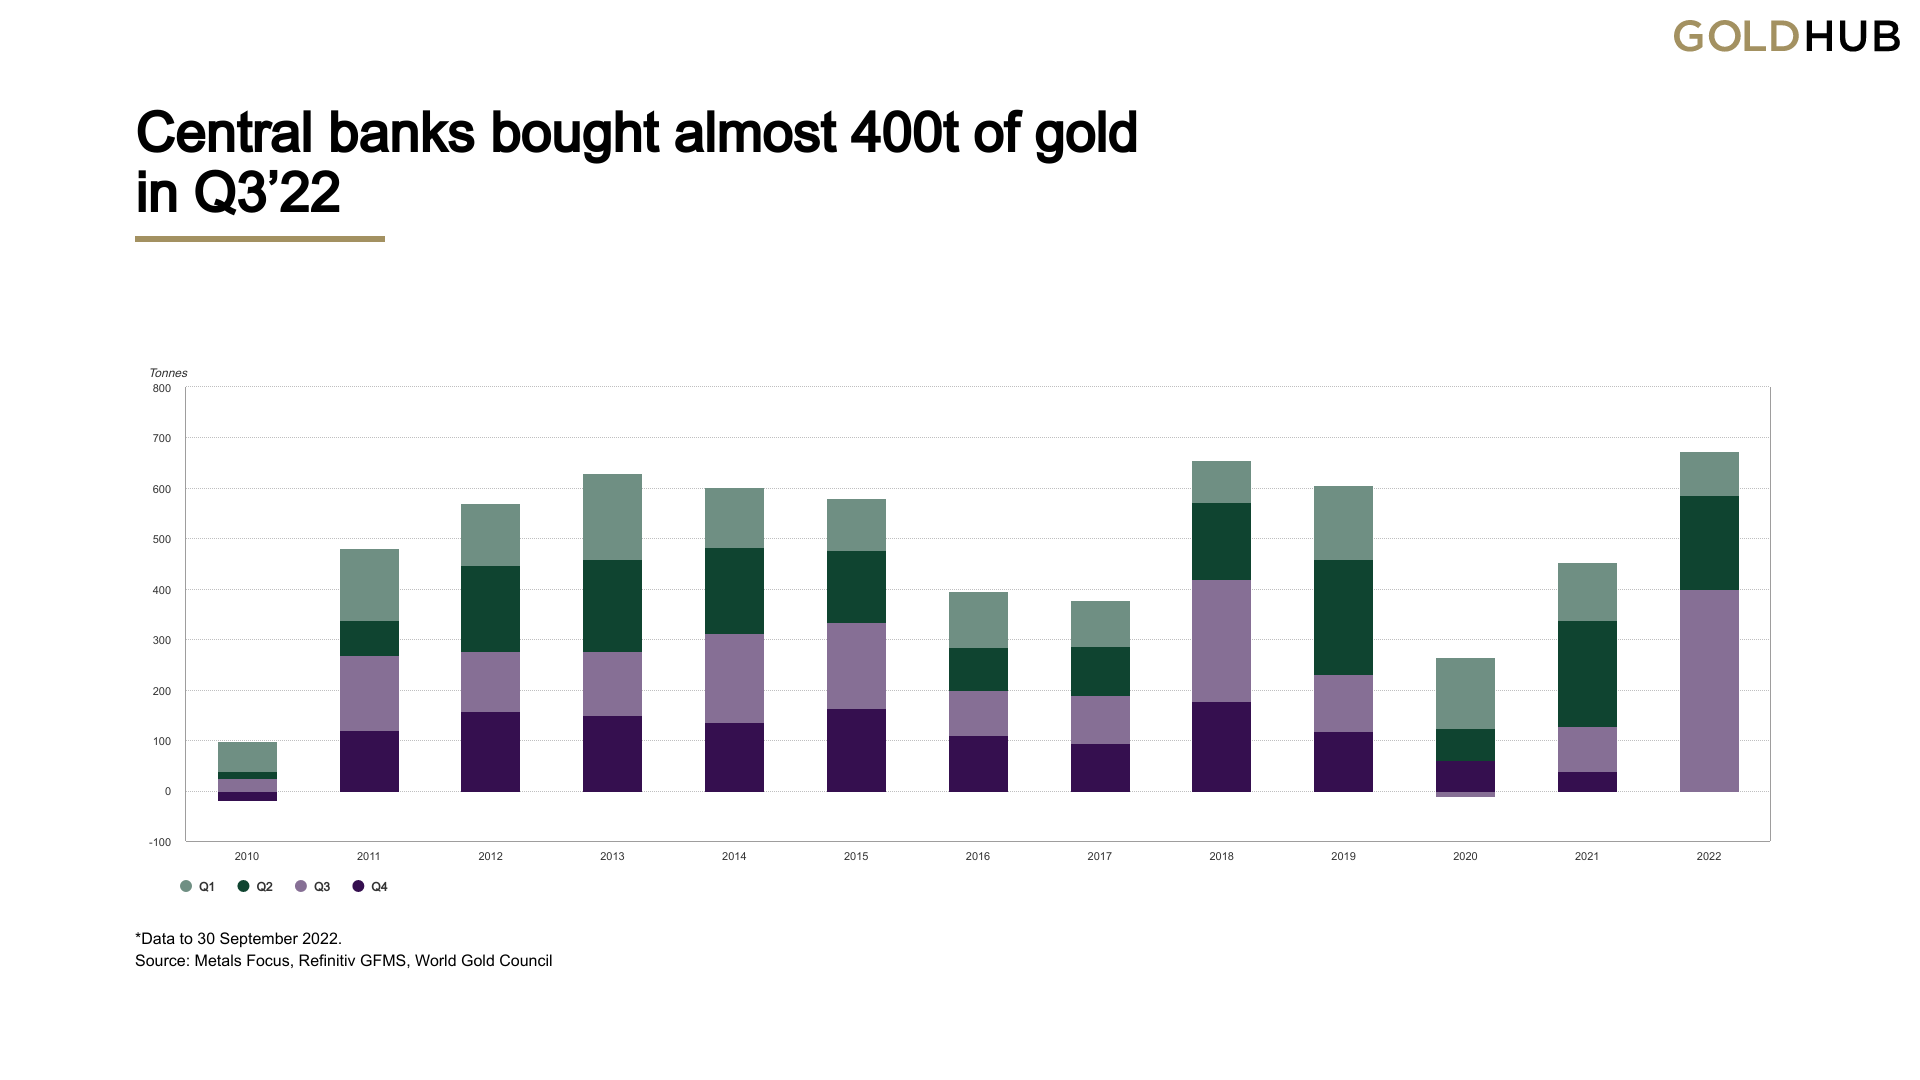 Αγορά χρυσού από την Κεντρική Τράπεζα φέτος Έφτασε σε τριμηνιαία υψηλά όλων των εποχών το τρίτο τρίμηνο, οι 400 τόνοι που αγοράστηκαν είναι το «πιο καταγεγραμμένο»